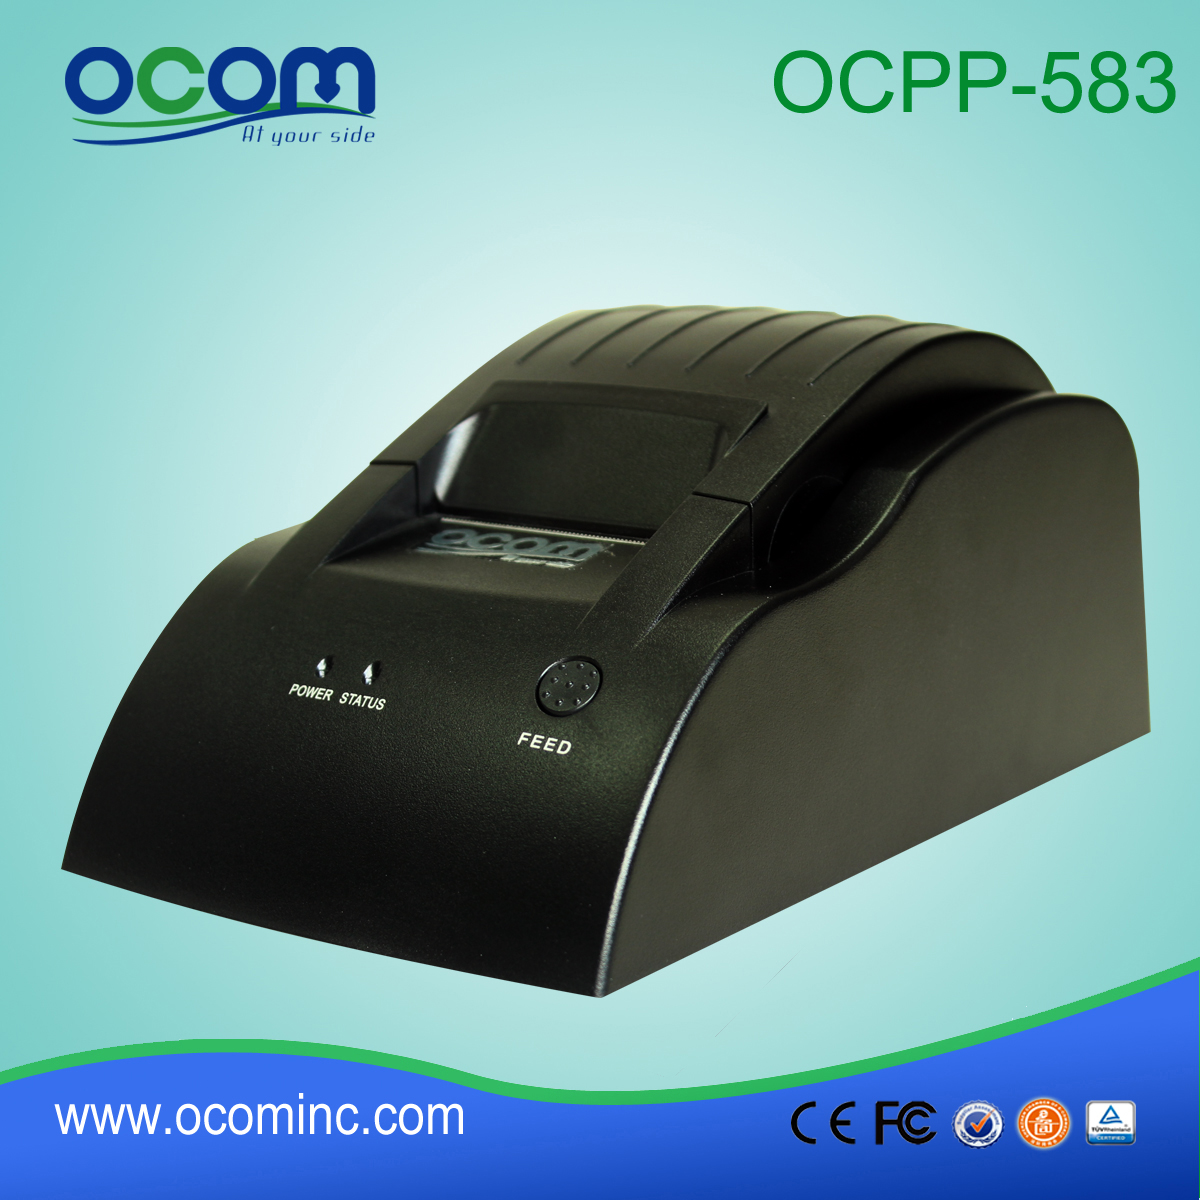 Low cost 58mm POS bill printer-OCPP-583